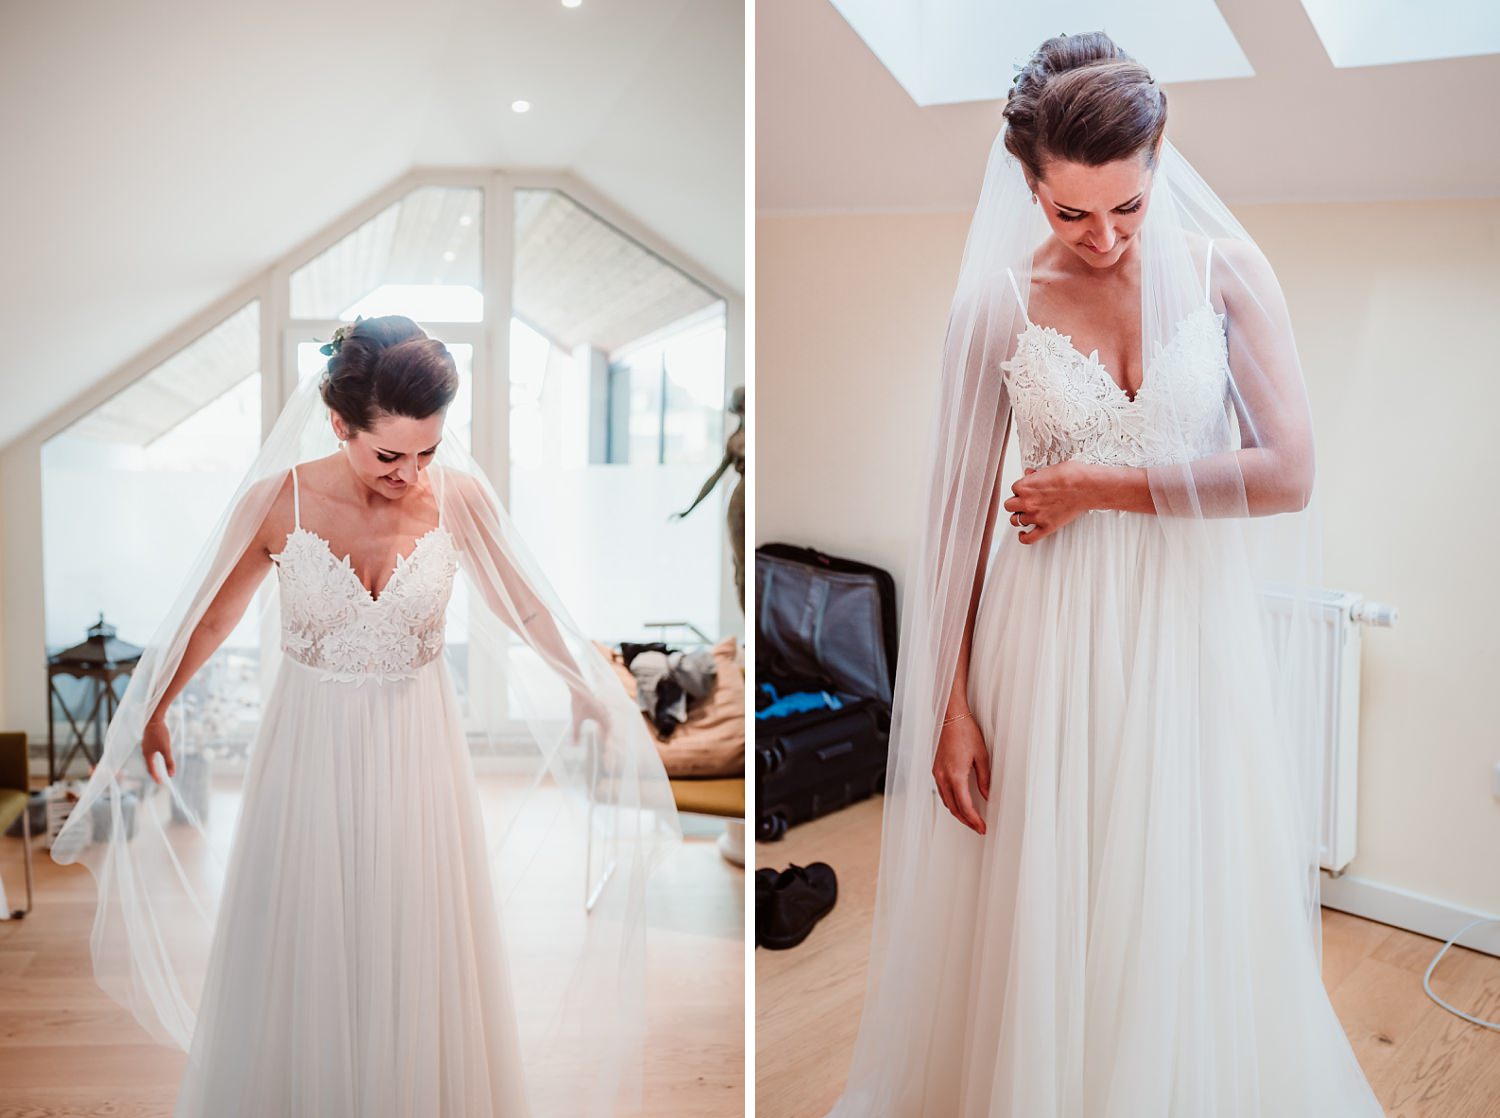 Hochzeitskleid | Getting Ready Braut | Hochzeitsfotografie Aachen